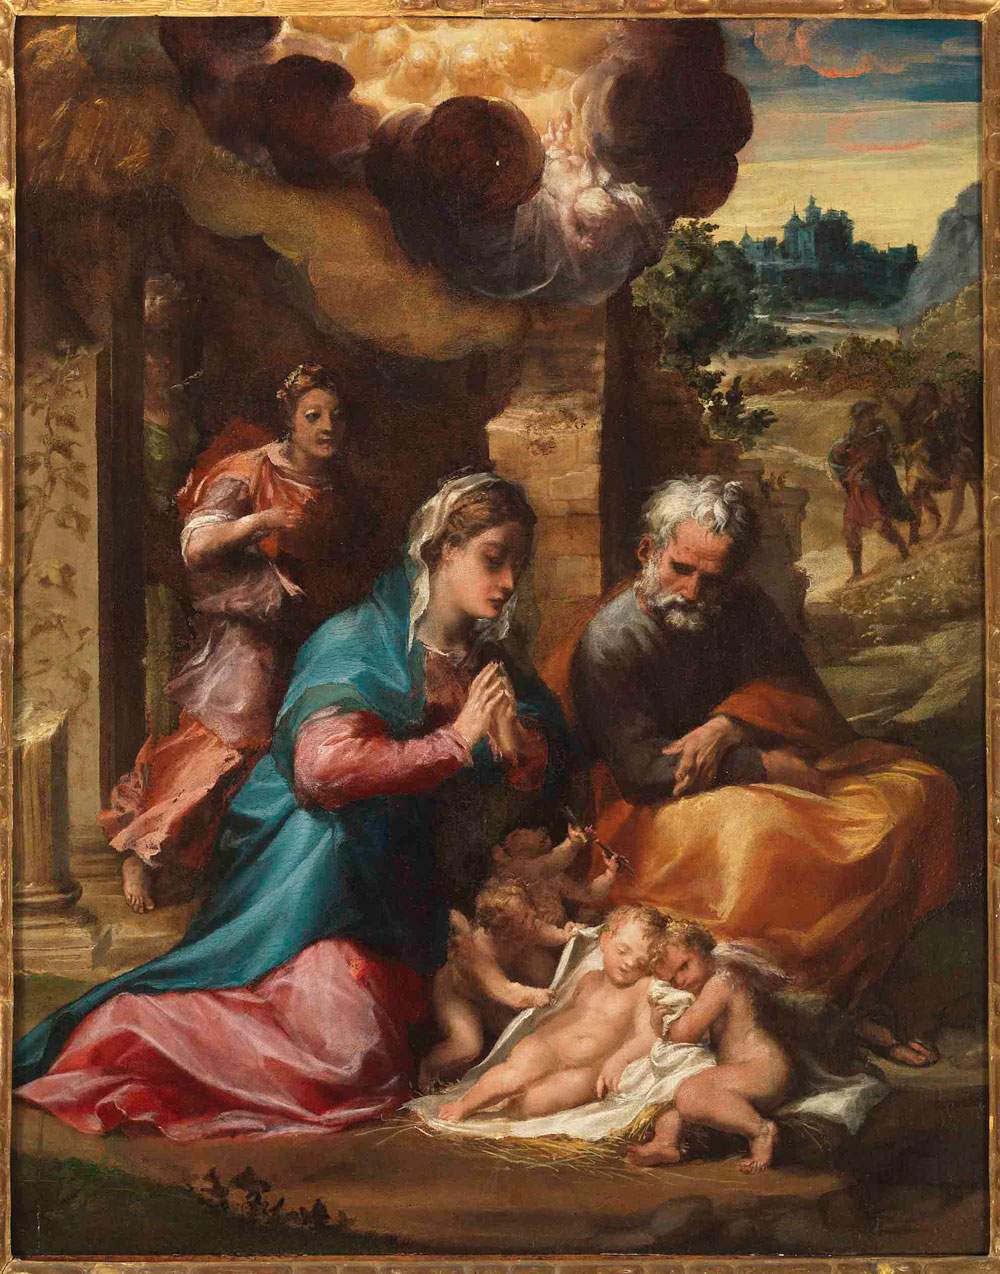 L'Adoration de l'enfant restaurée de Michelangelo Anselmi exposée à Milan